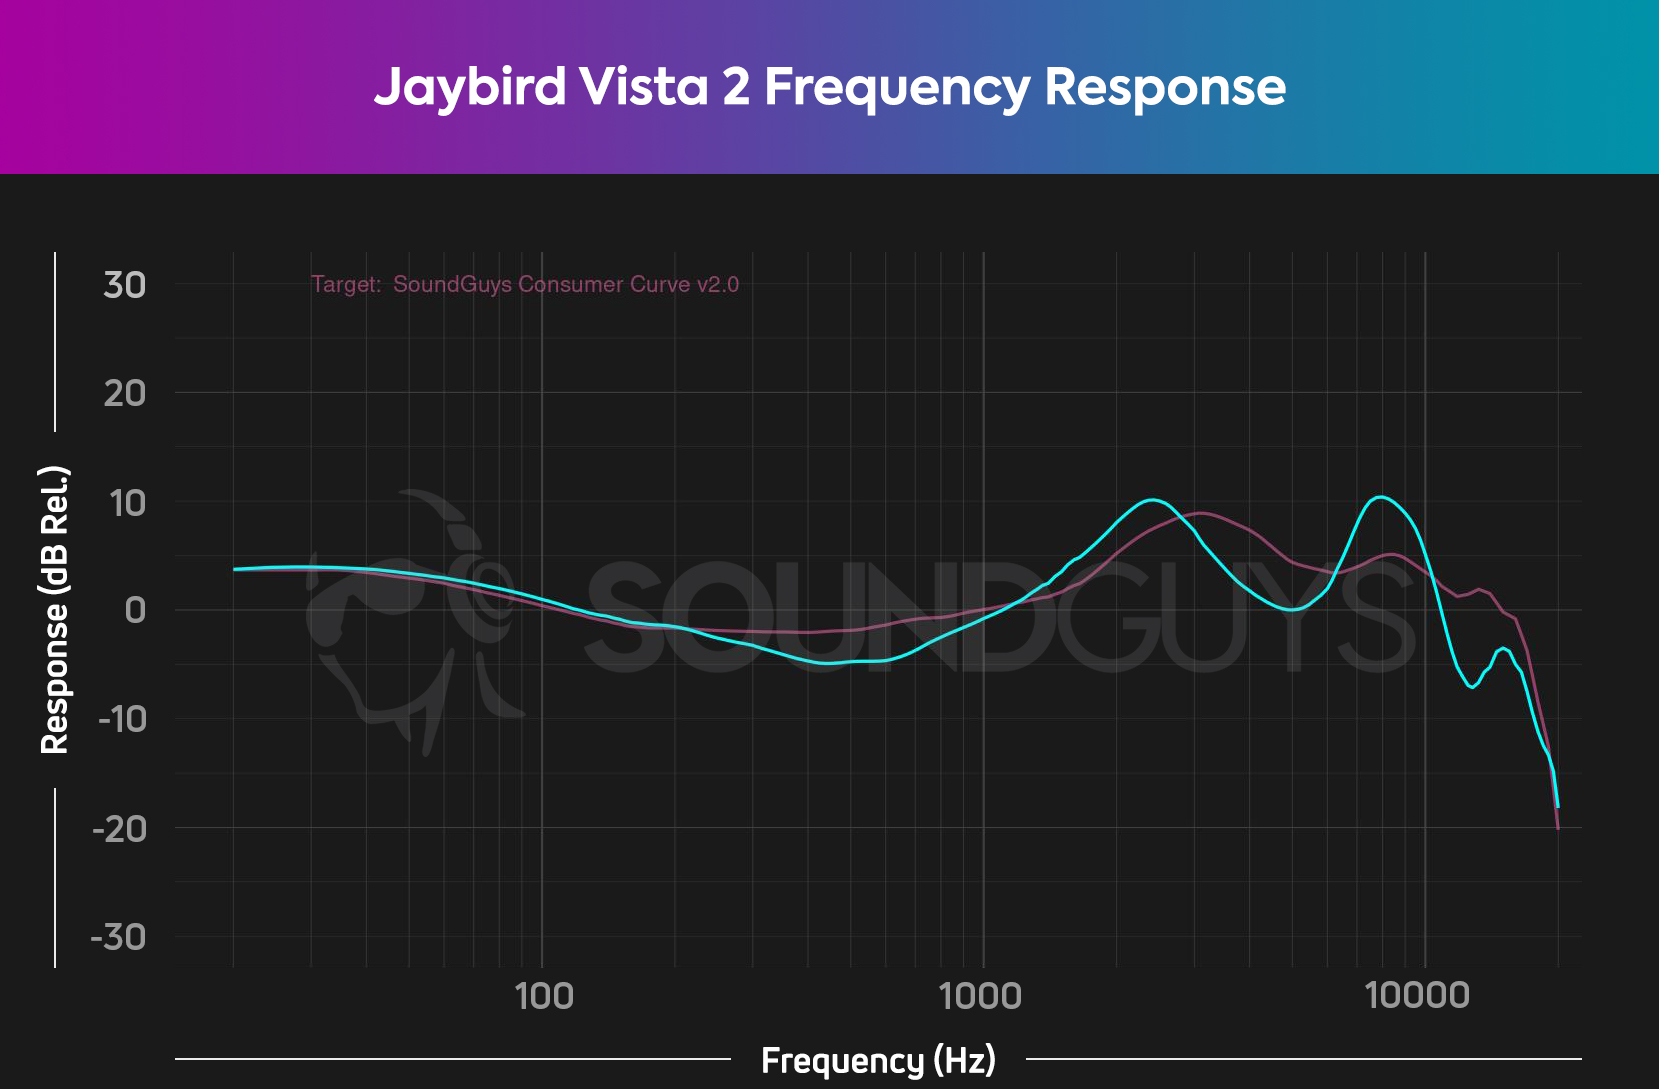 图表描述了Jaybird Vista 2噪声取消耳塞的频率响应（青色）对我们的消费者曲线V2（粉红色），表明Vista 2具有令人愉悦的低音和中端响应。